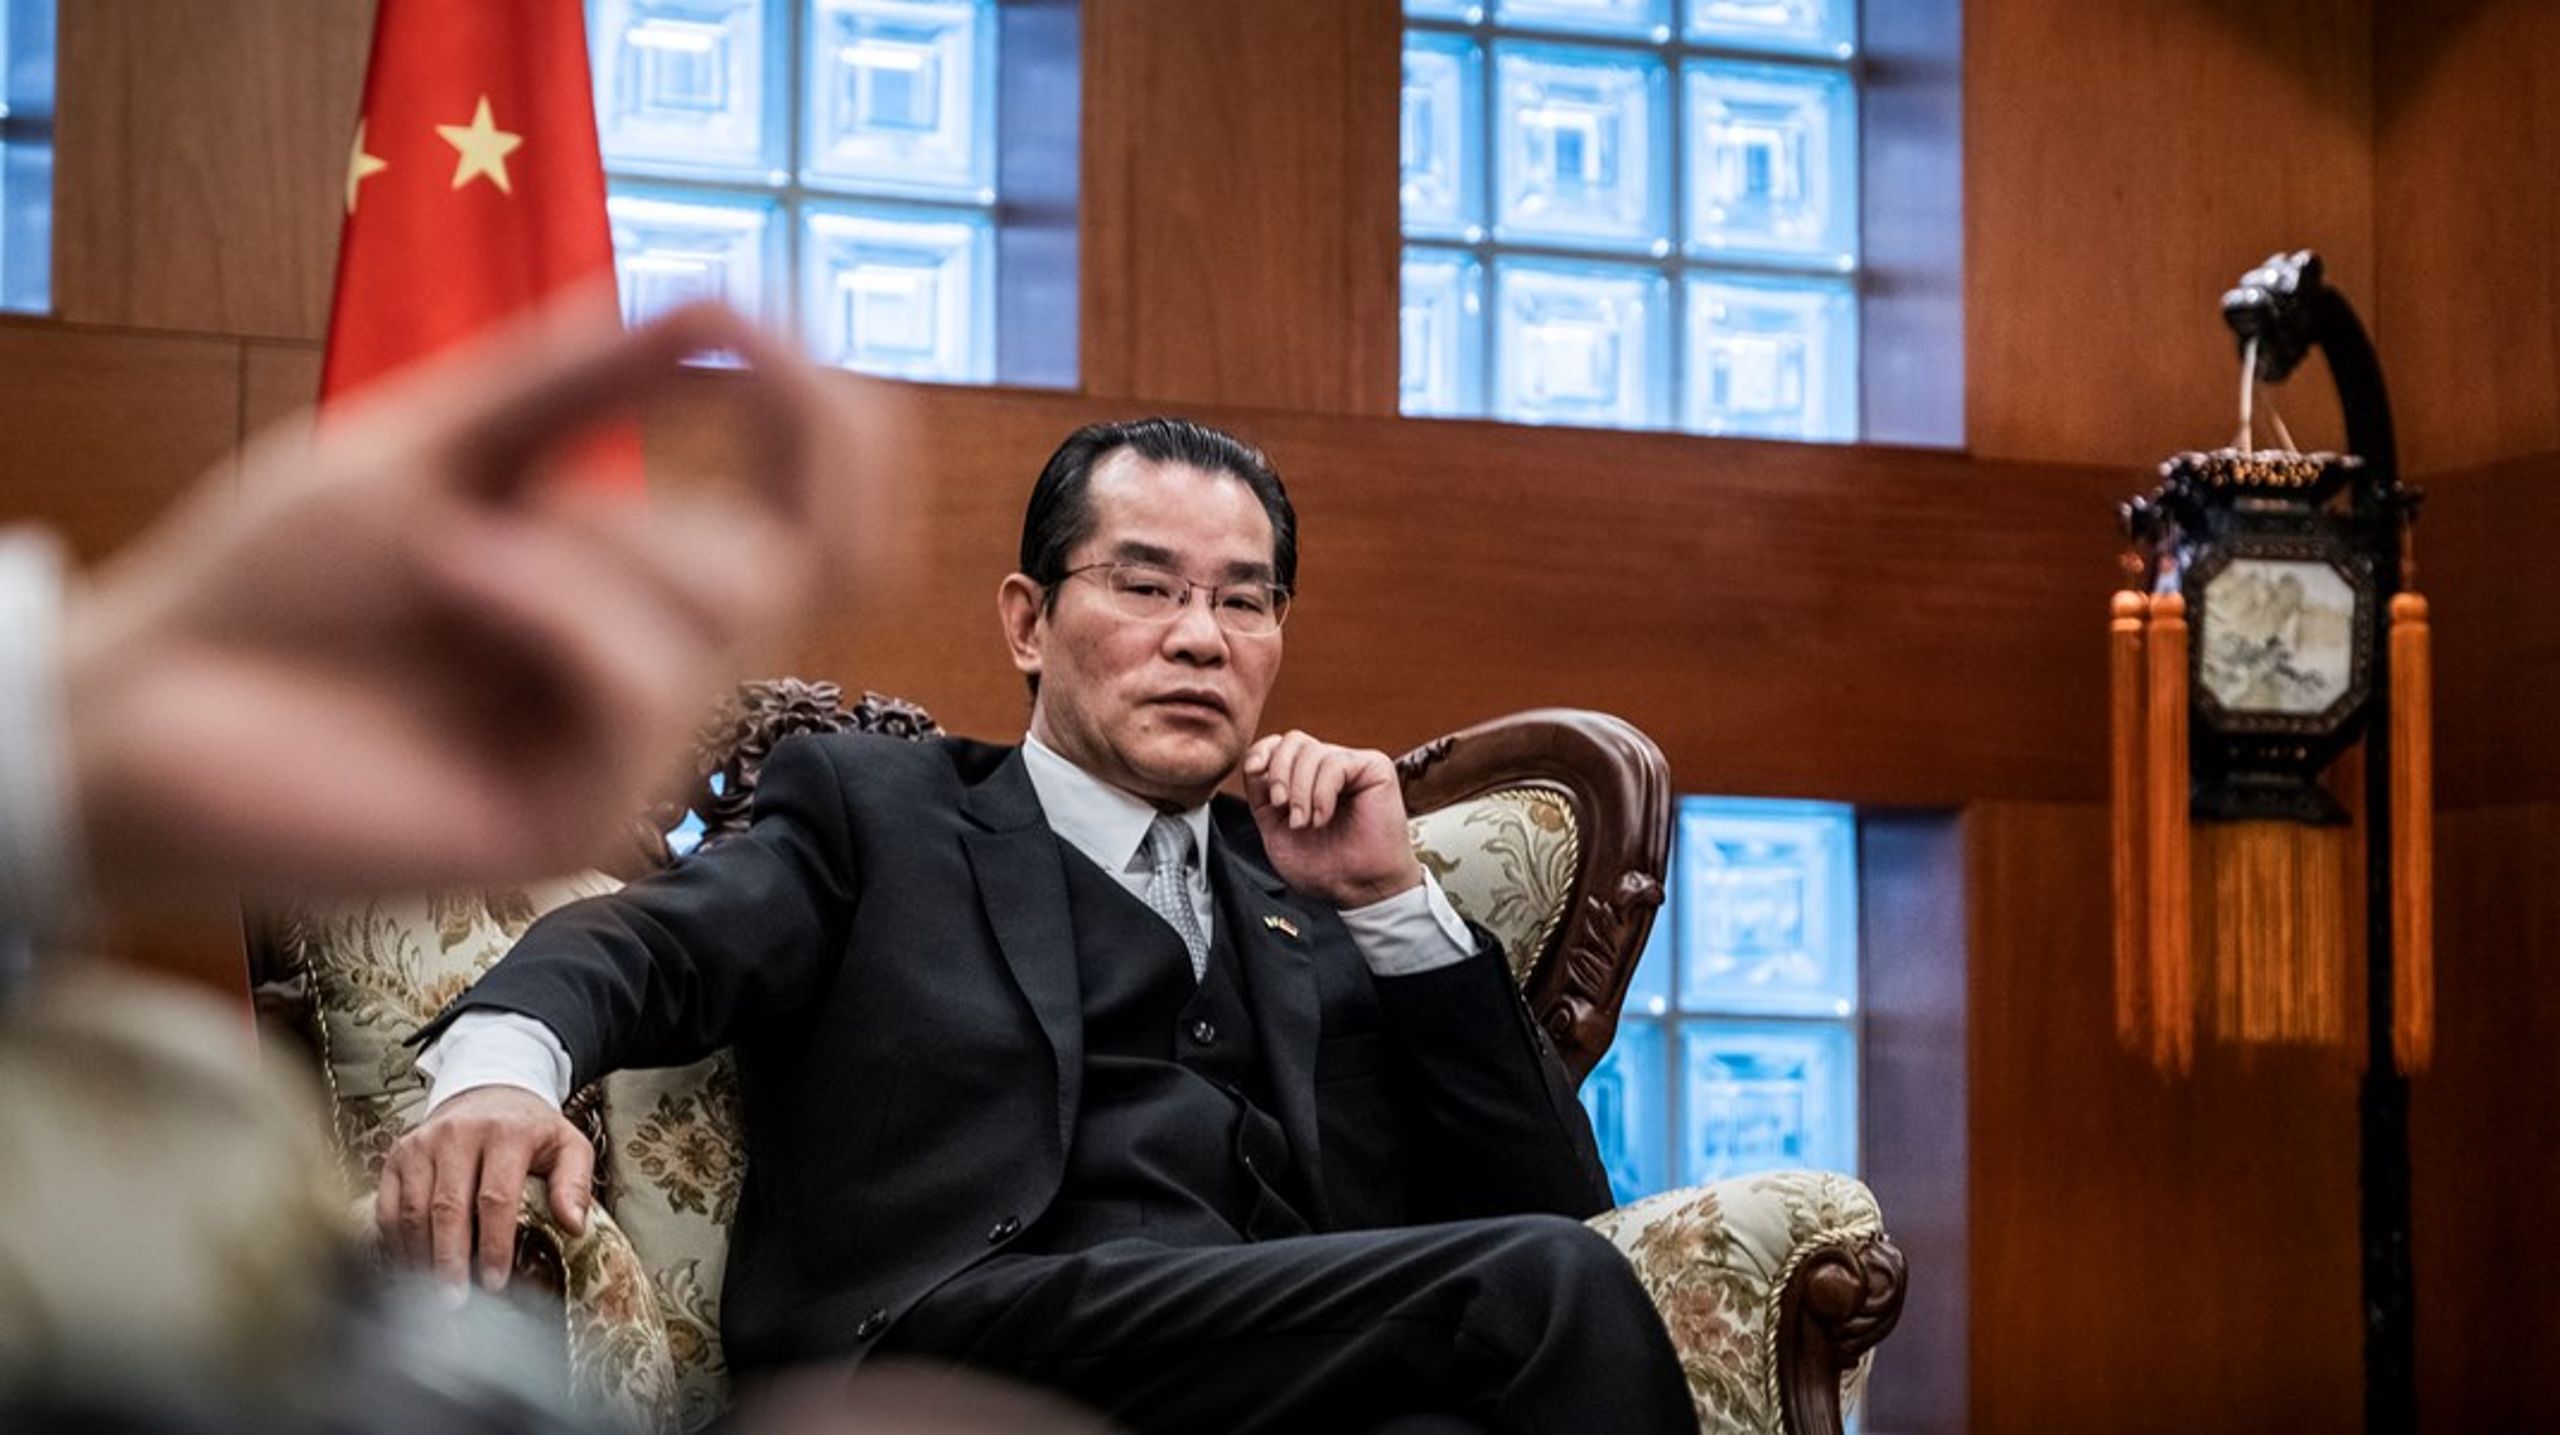 Utrikesdepartementet bör kalla upp Kinas ambassadör Gui
Congyou efter varje hotfullt brev och offentliggöra att
så har skett, skriver tankesmedjan Frivärld i sin rapport Draken som bytte taktik.